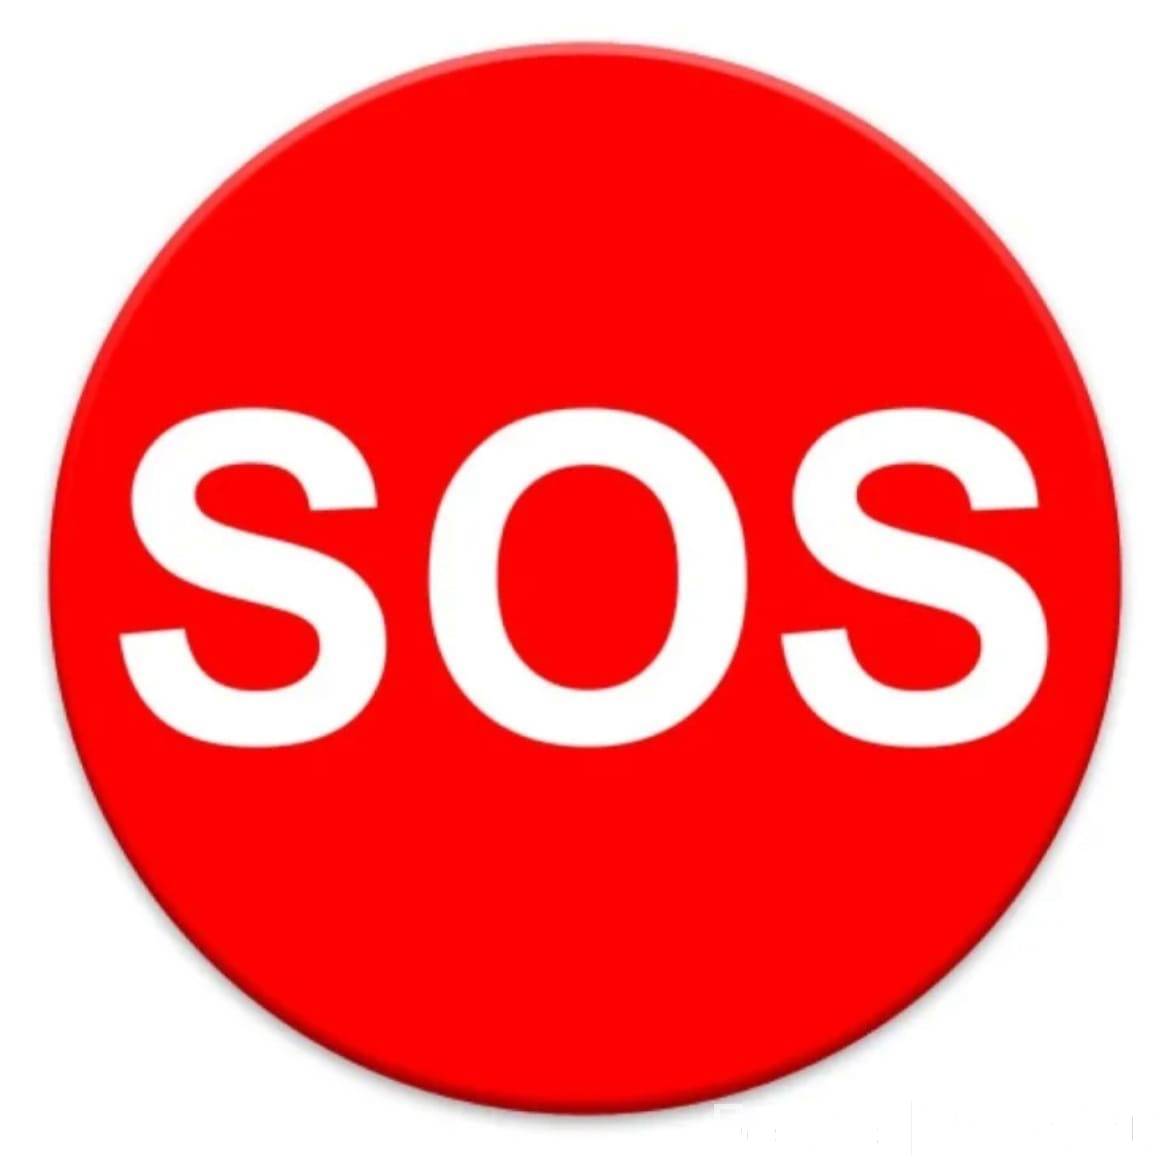 Что такое сос. SOS. Знак SOS. Кнопка сос. Логотип сос.